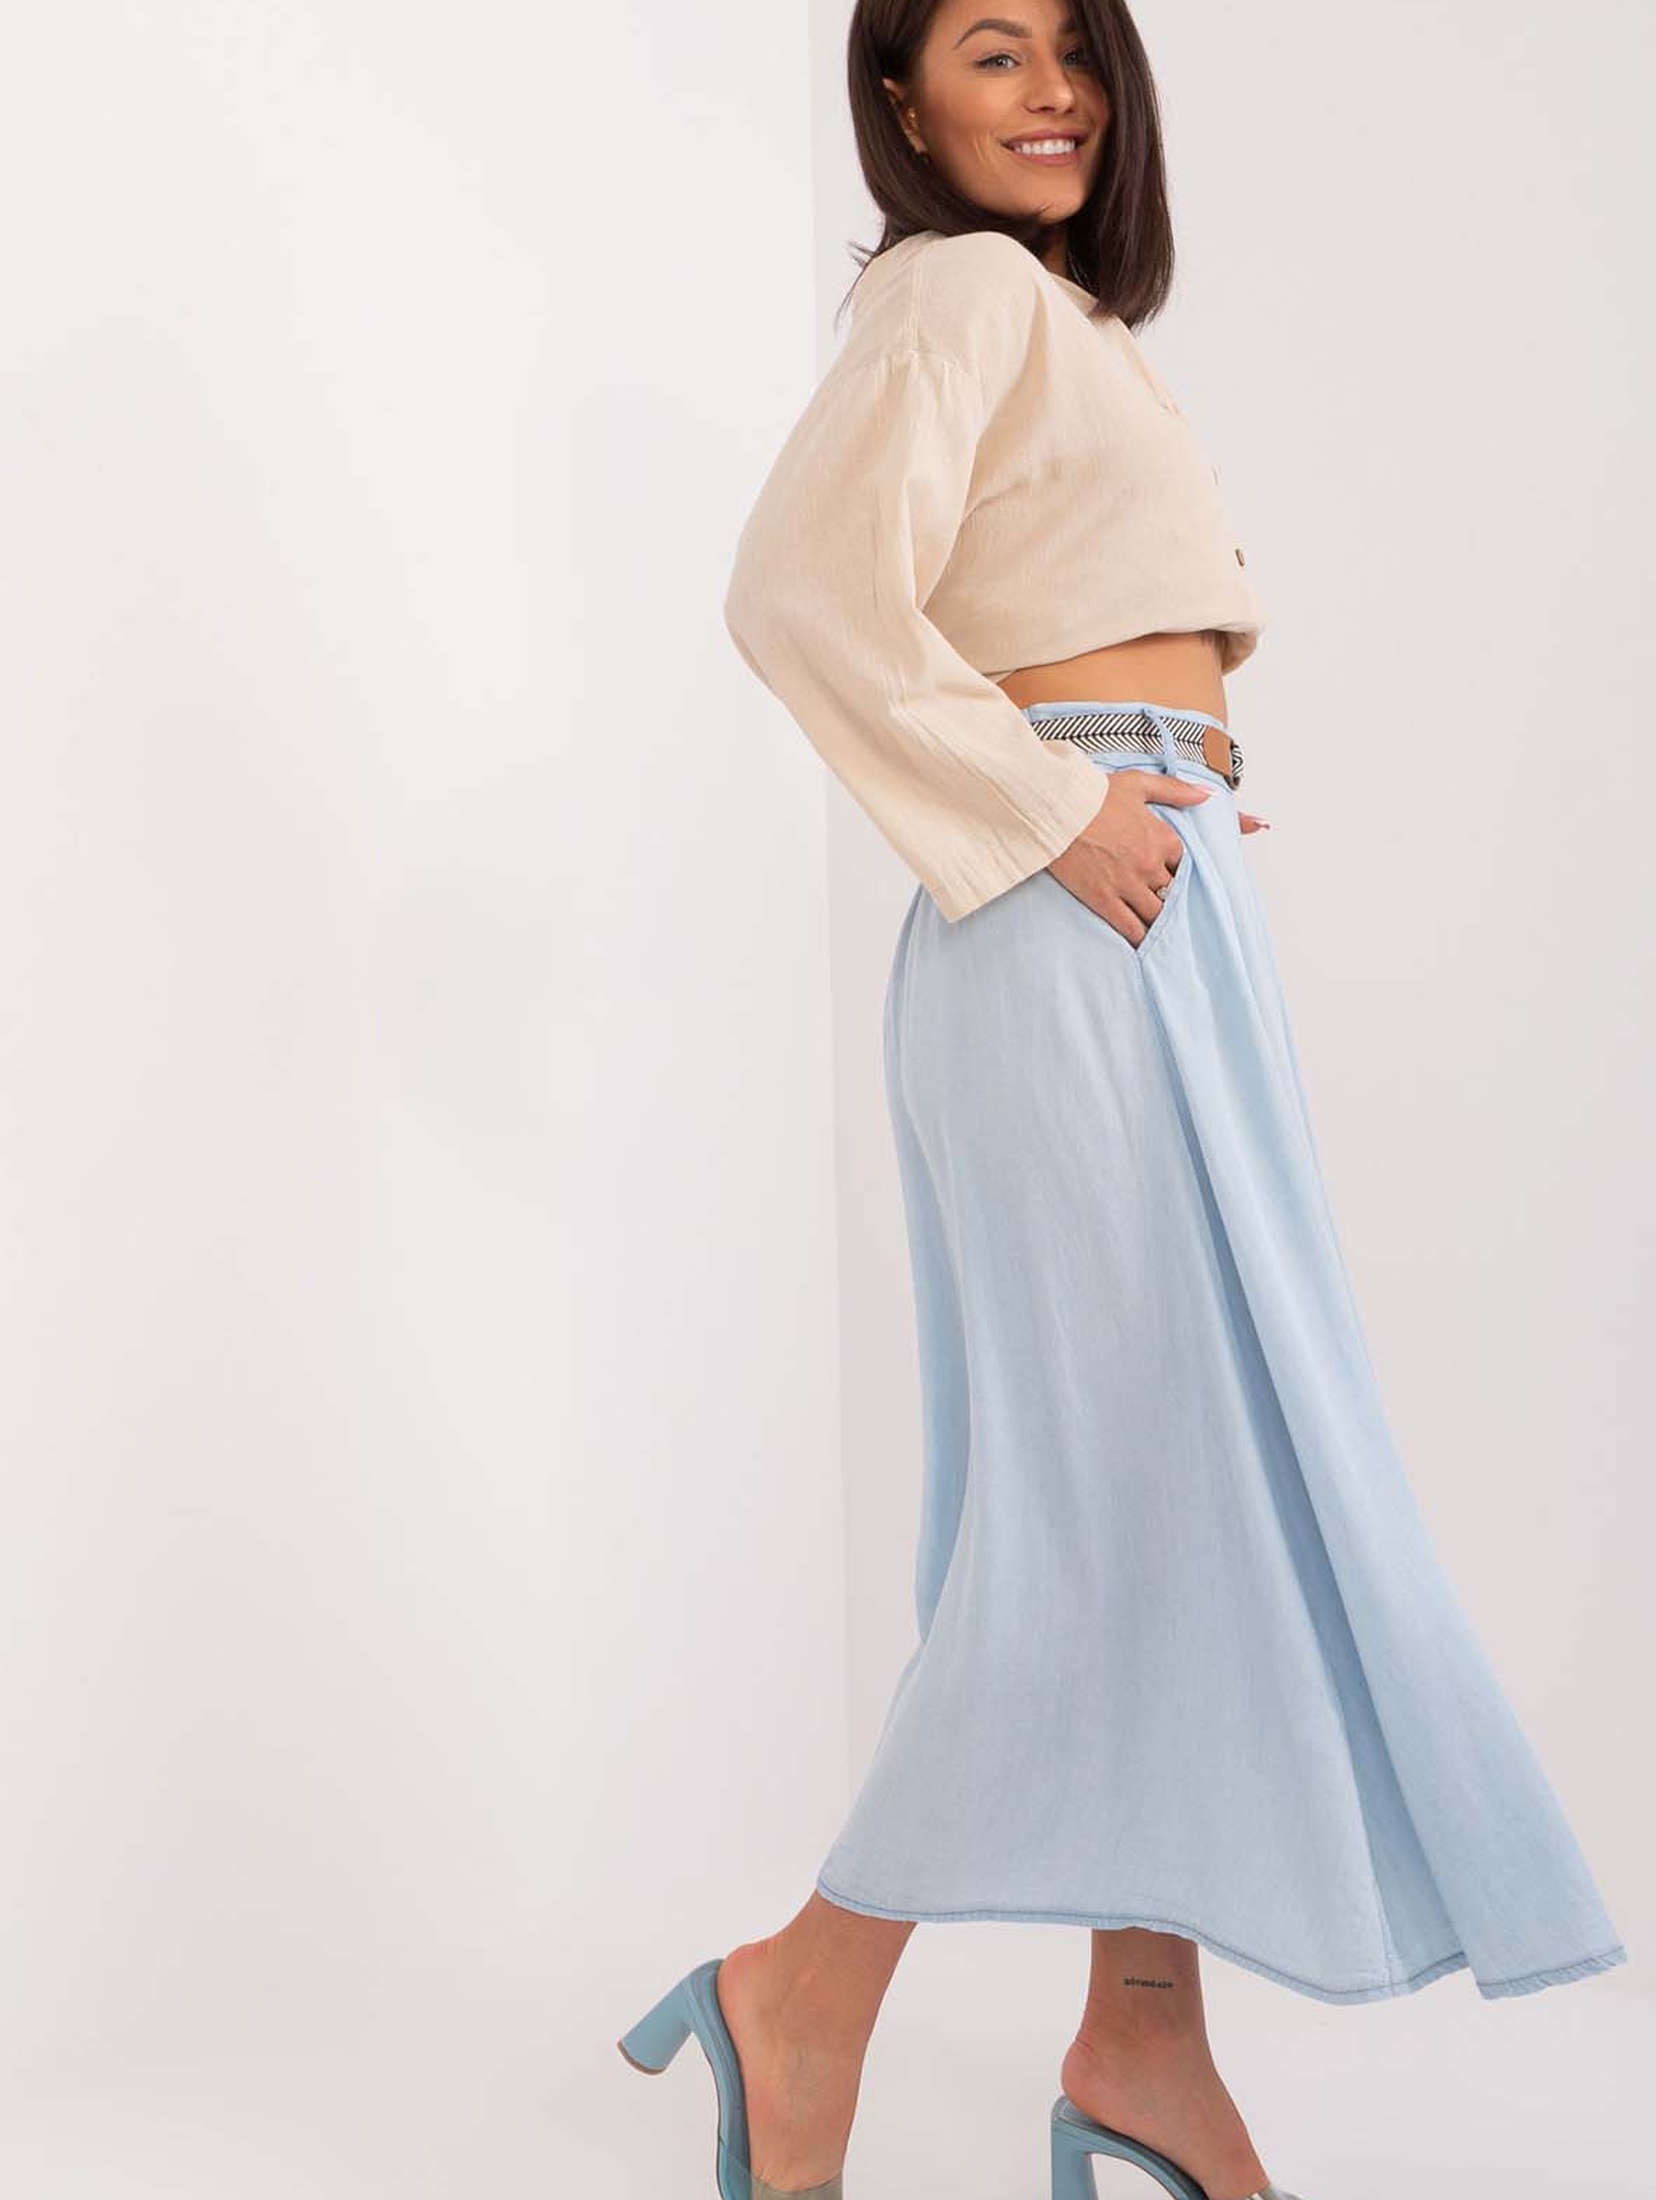 Niebieska damska spódnica midi z kieszeniami